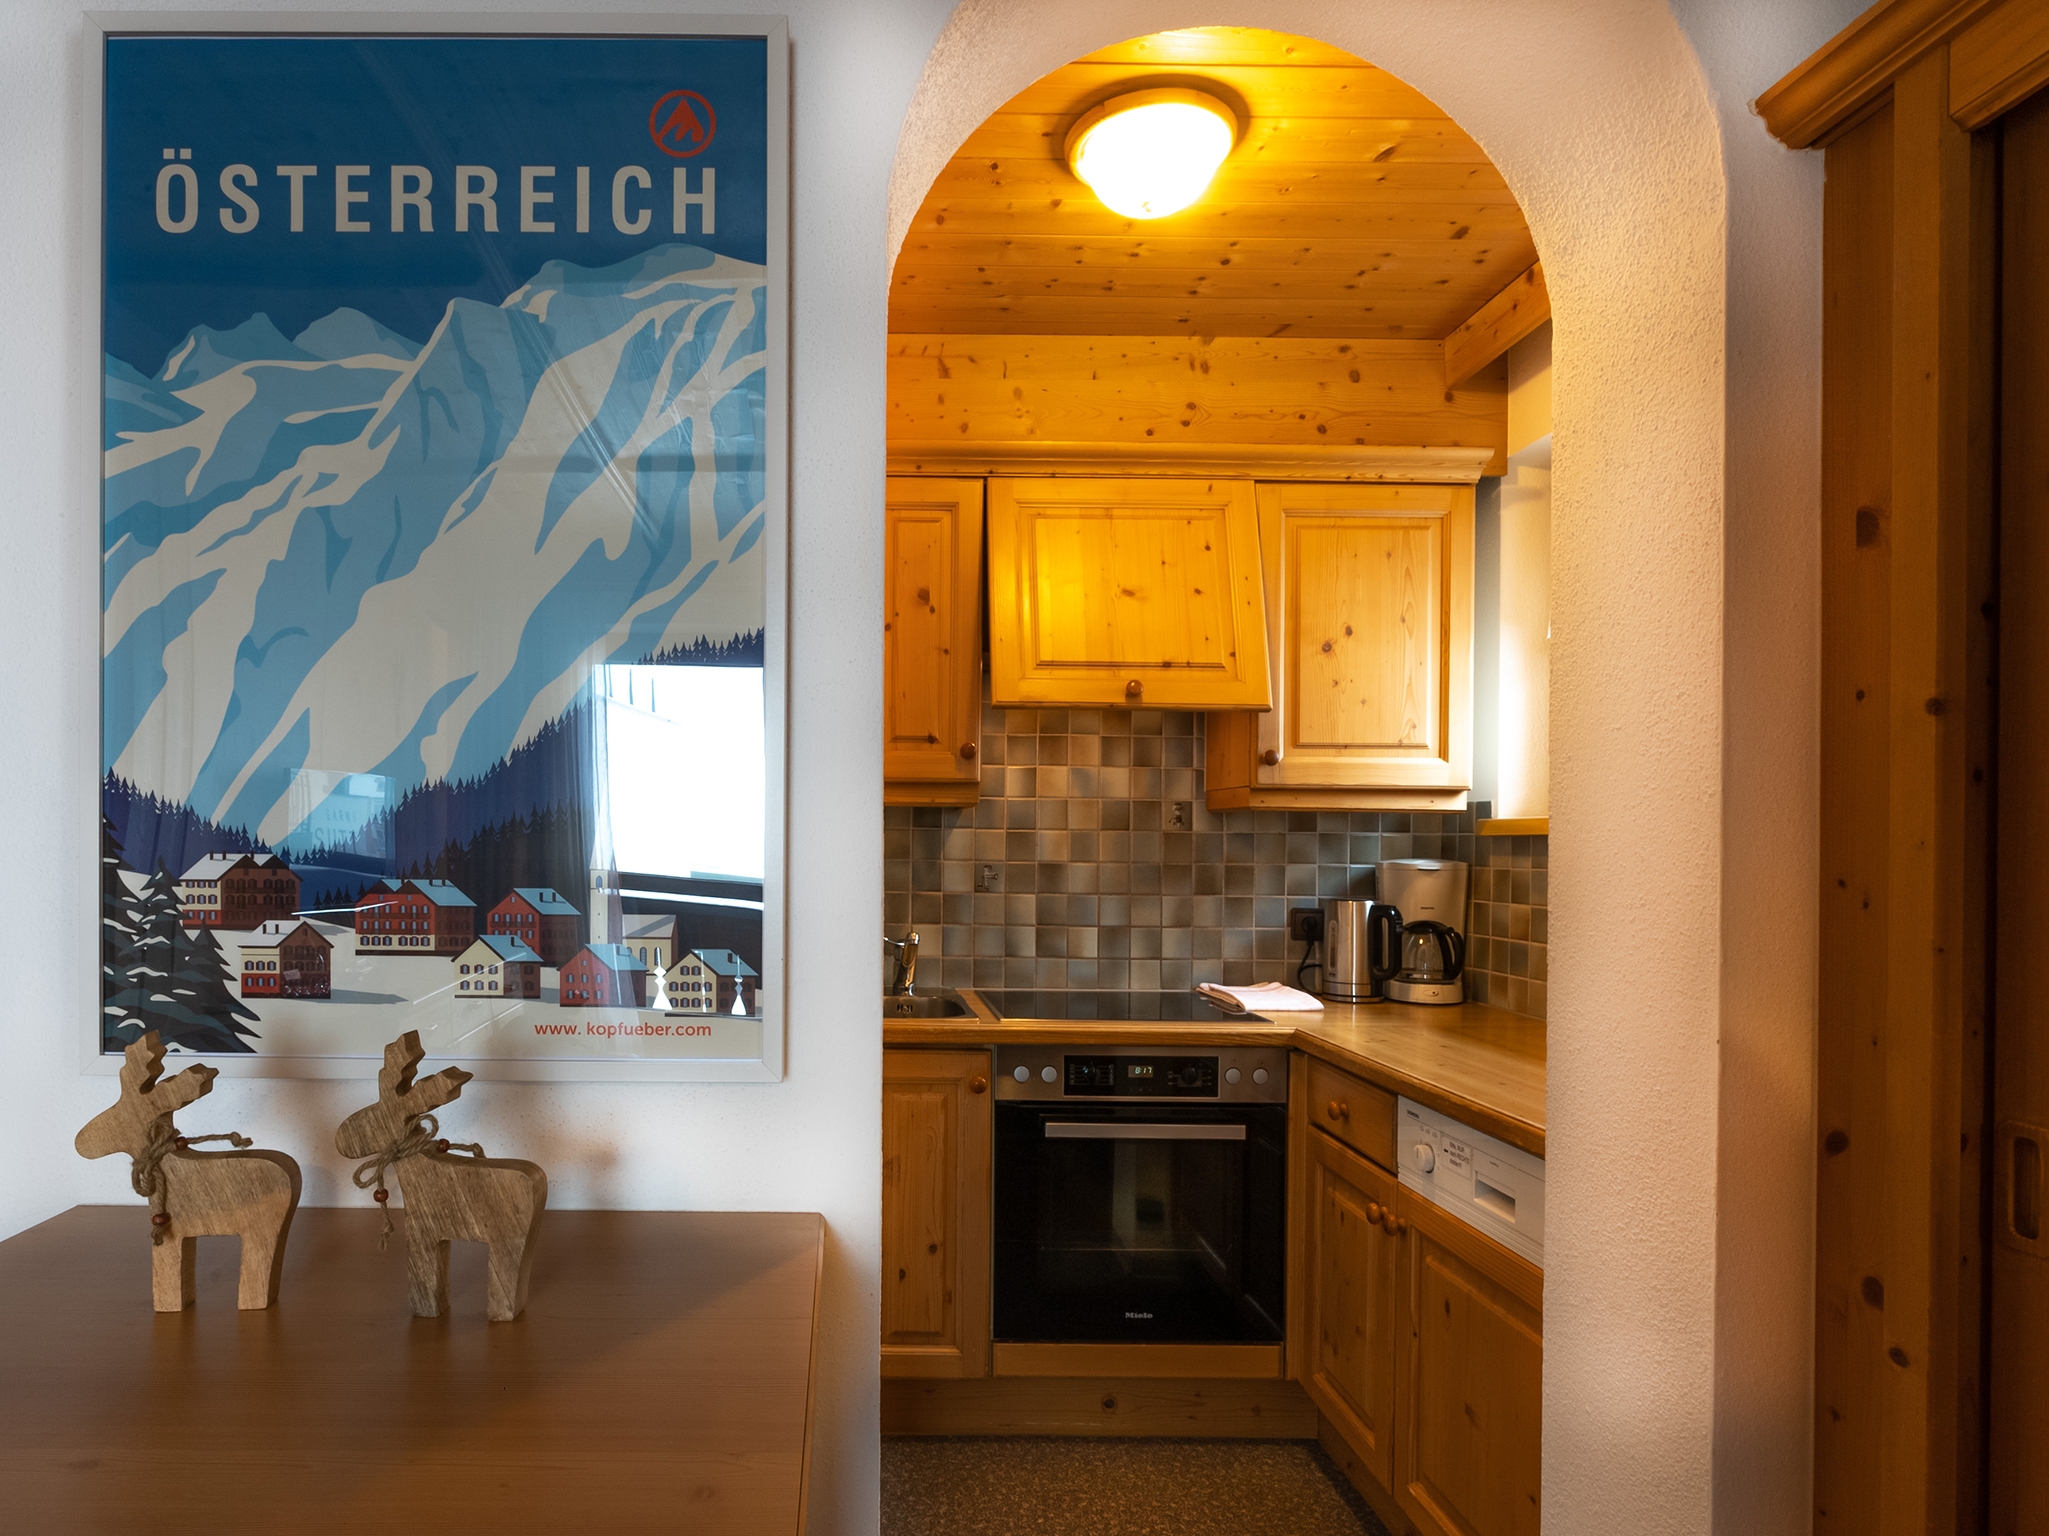 Apart Furcletta: Appartement für 4 Personen - Küchenzeile  (Beispiel)